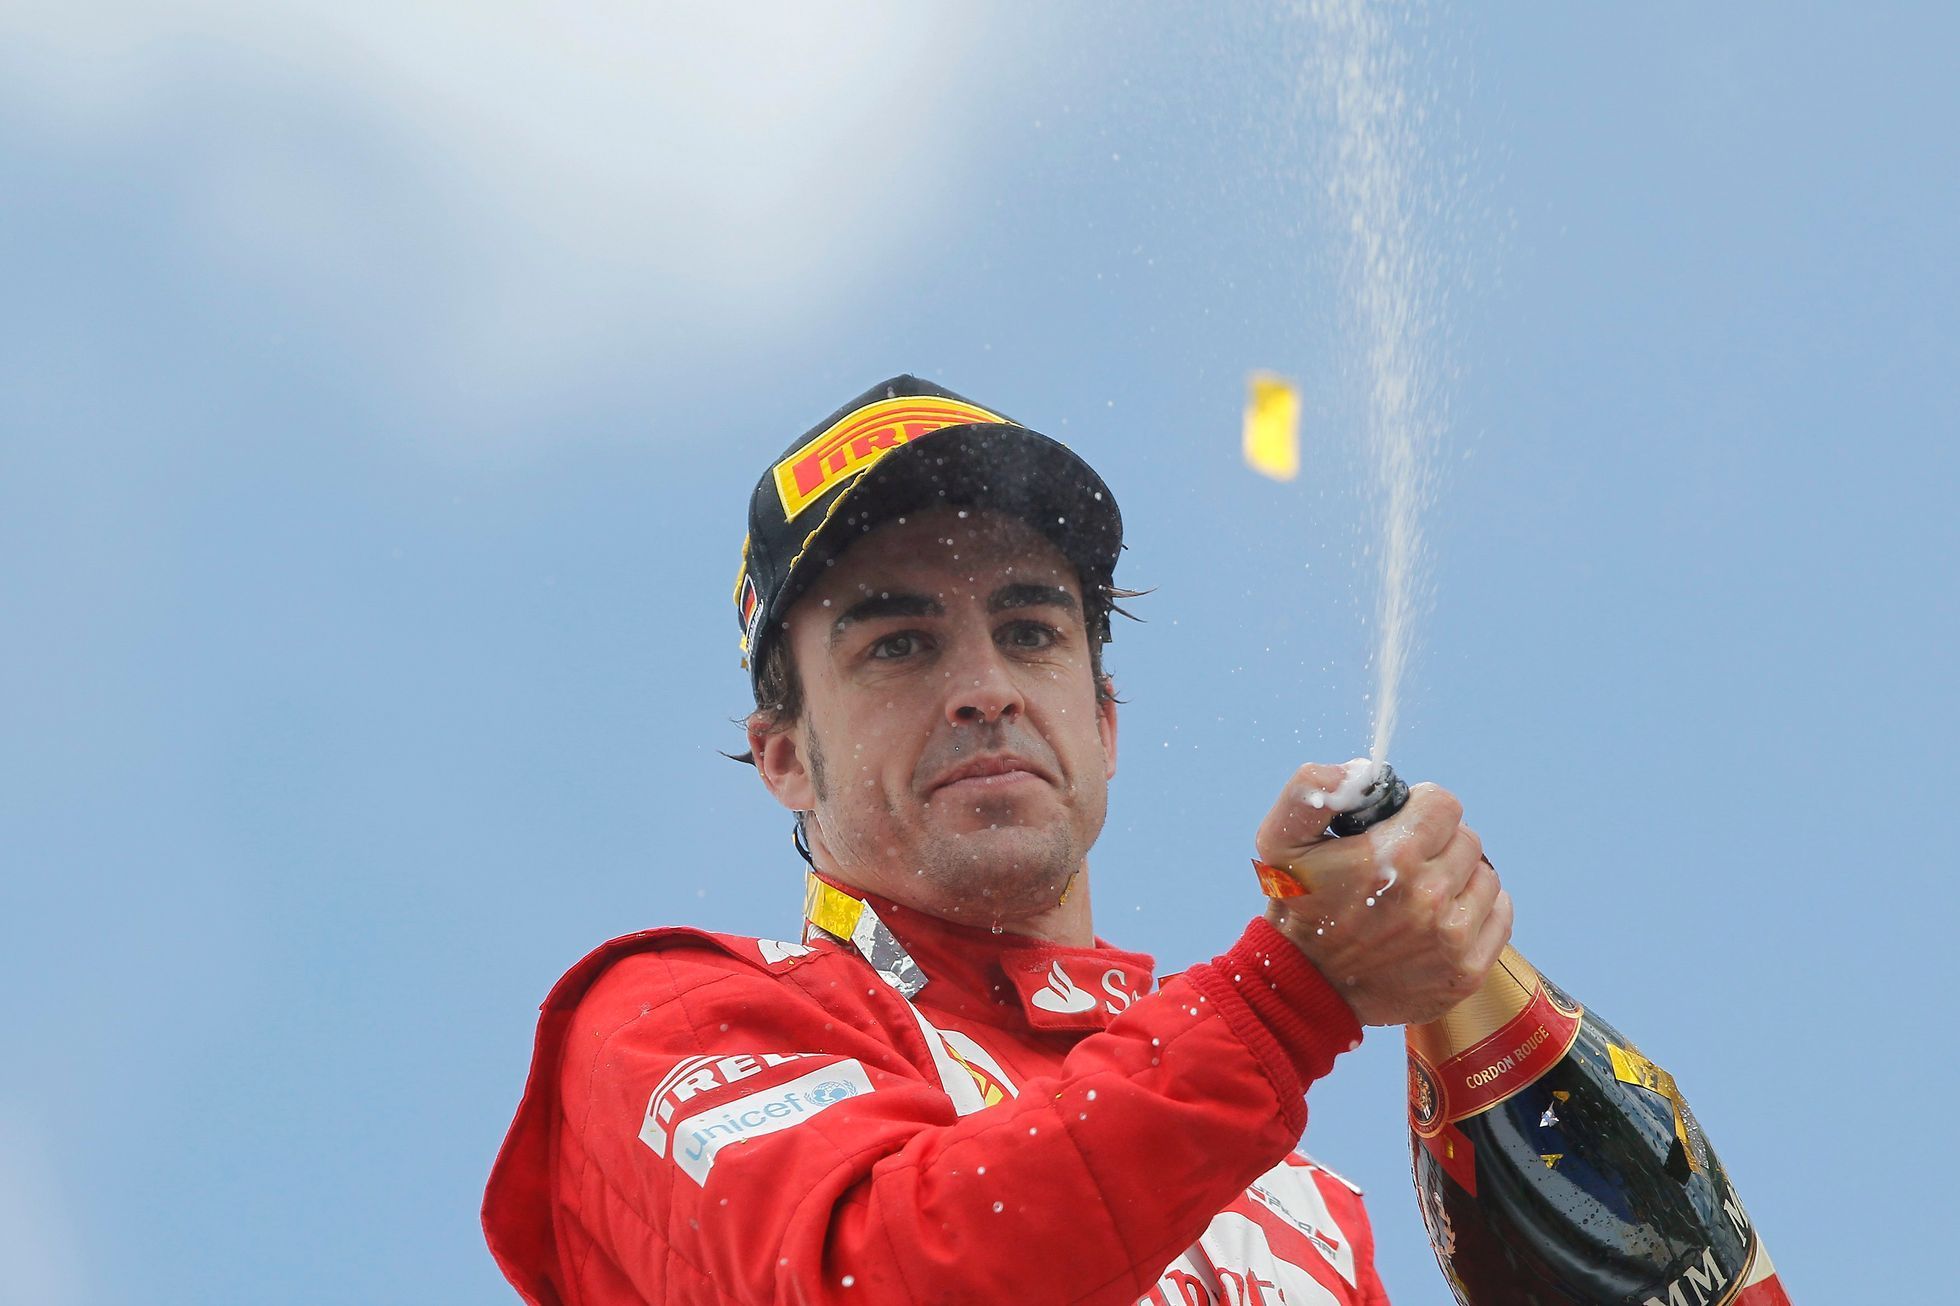 VC Německa: Fernando Alonso slaví vítězství